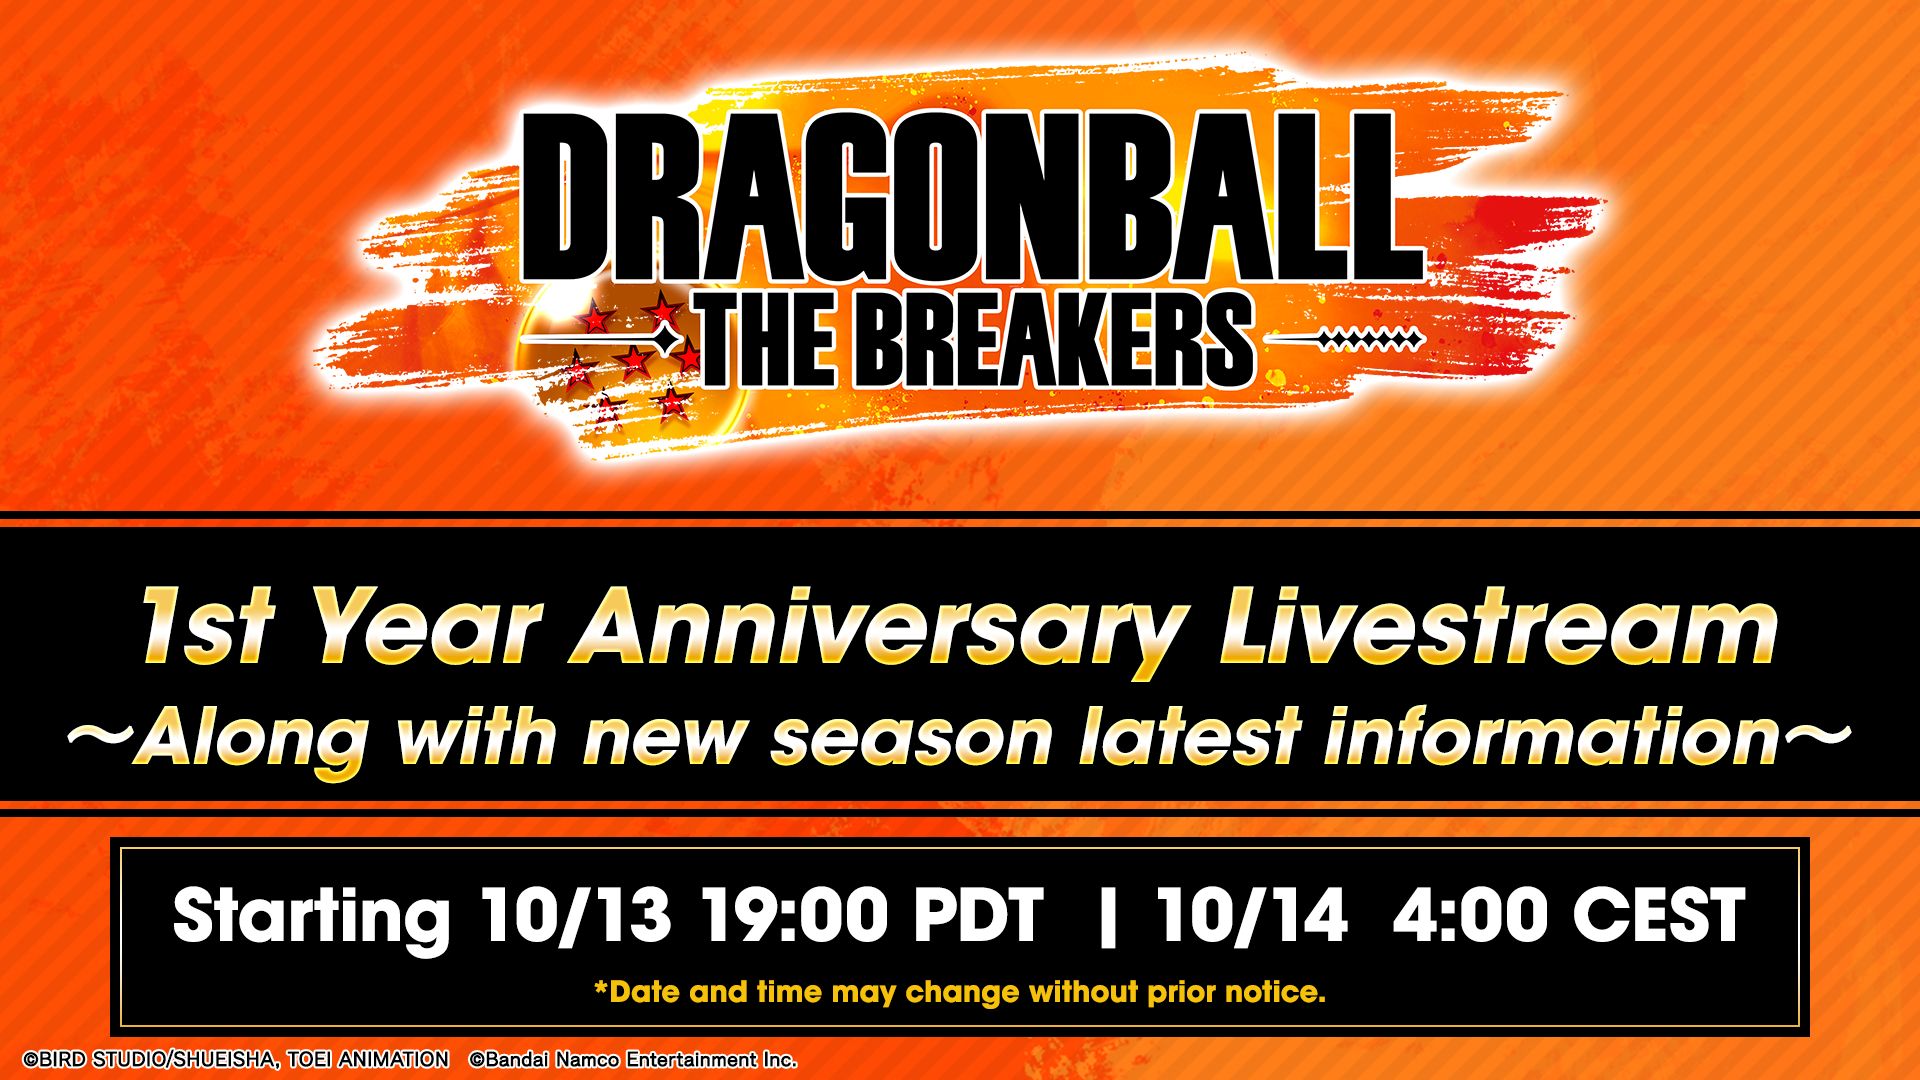 DRAGON BALL: THE BREAKERS Saison 4 bientôt disponible pour célébrer le 1er anniversaire du jeu ! Connectez-vous au livestream du 1er anniversaire pour de nouvelles informations !